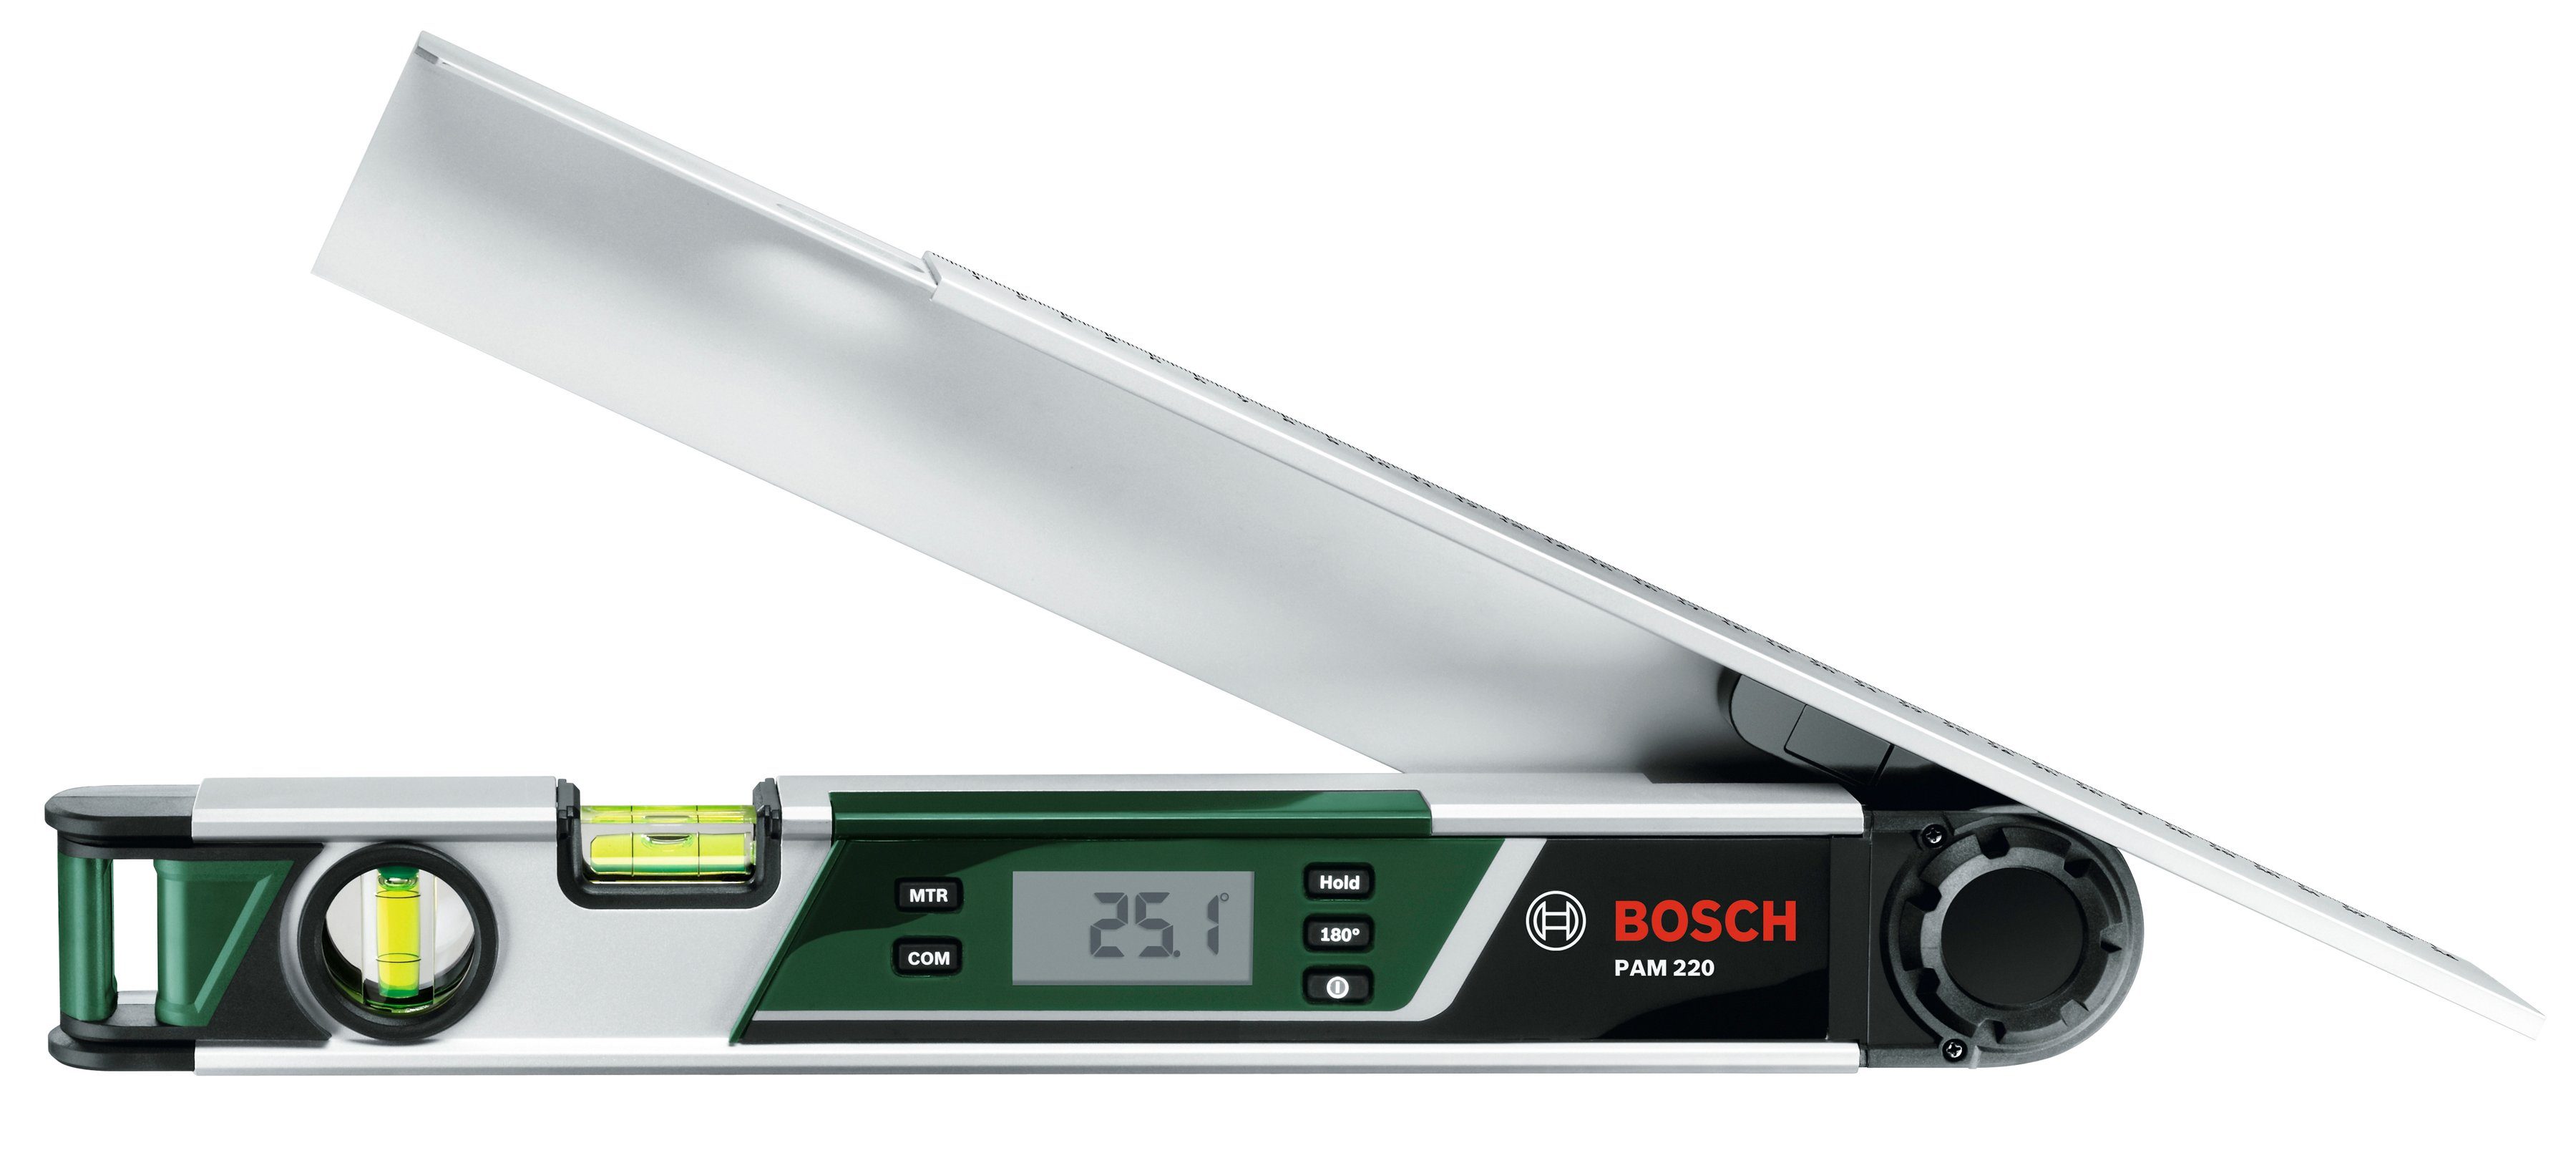 Bosch Home bis 220°, 220, & Garden Winkelmesser cm L:42,5 PAM